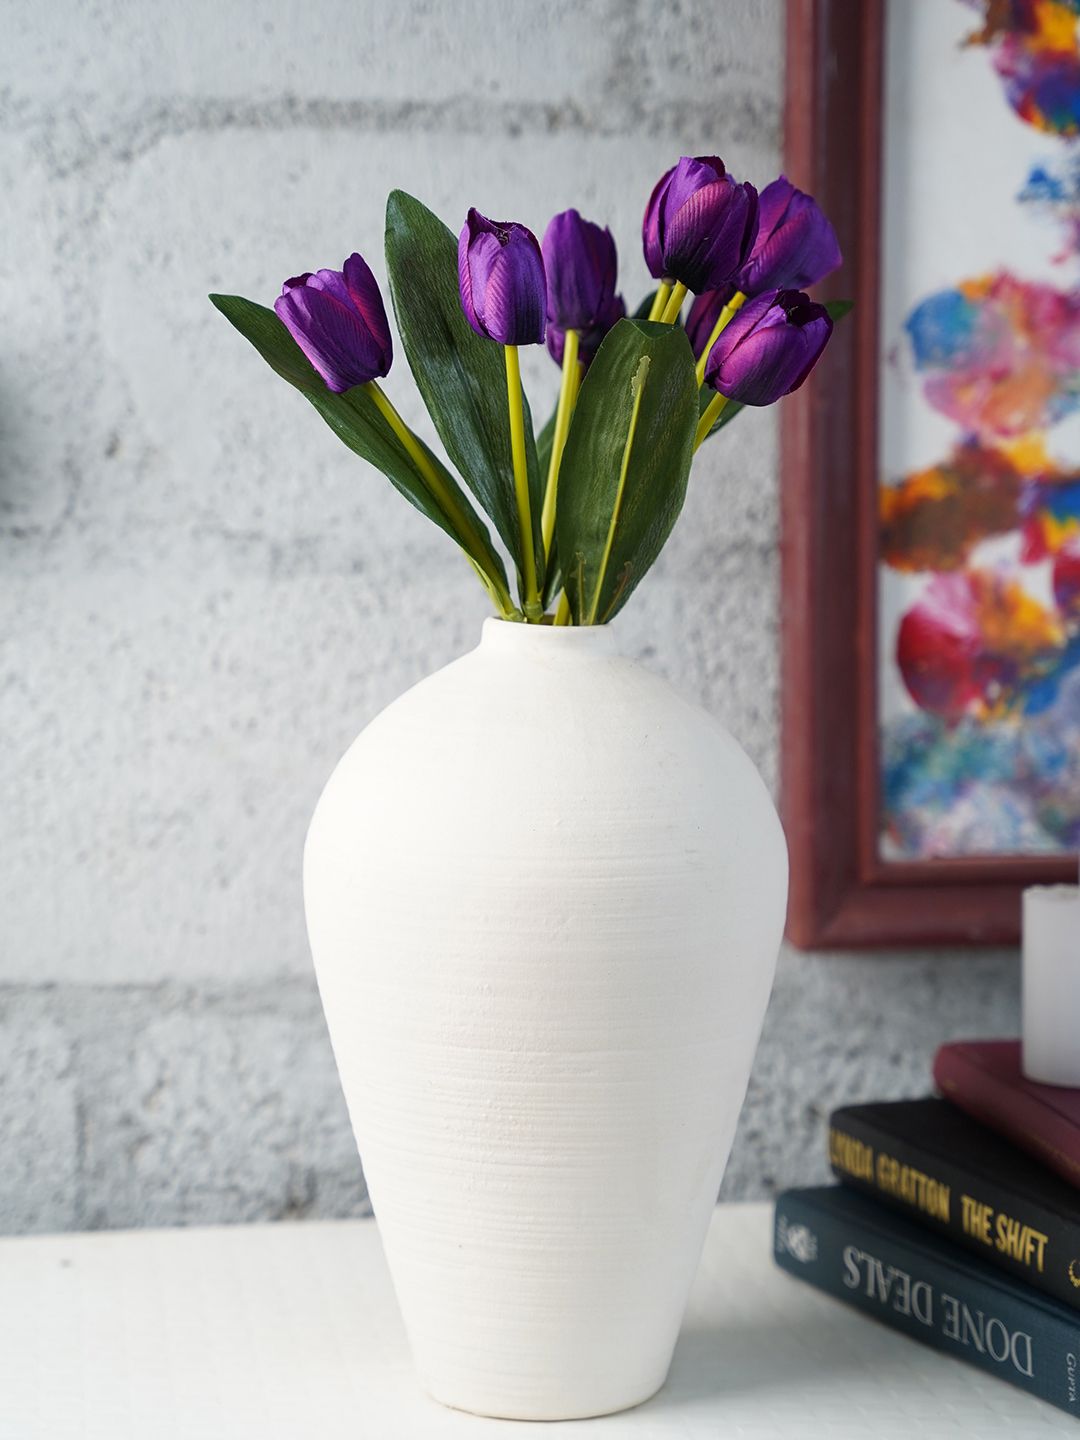 Folkstorys White Solid Ceramic Vase Price in India